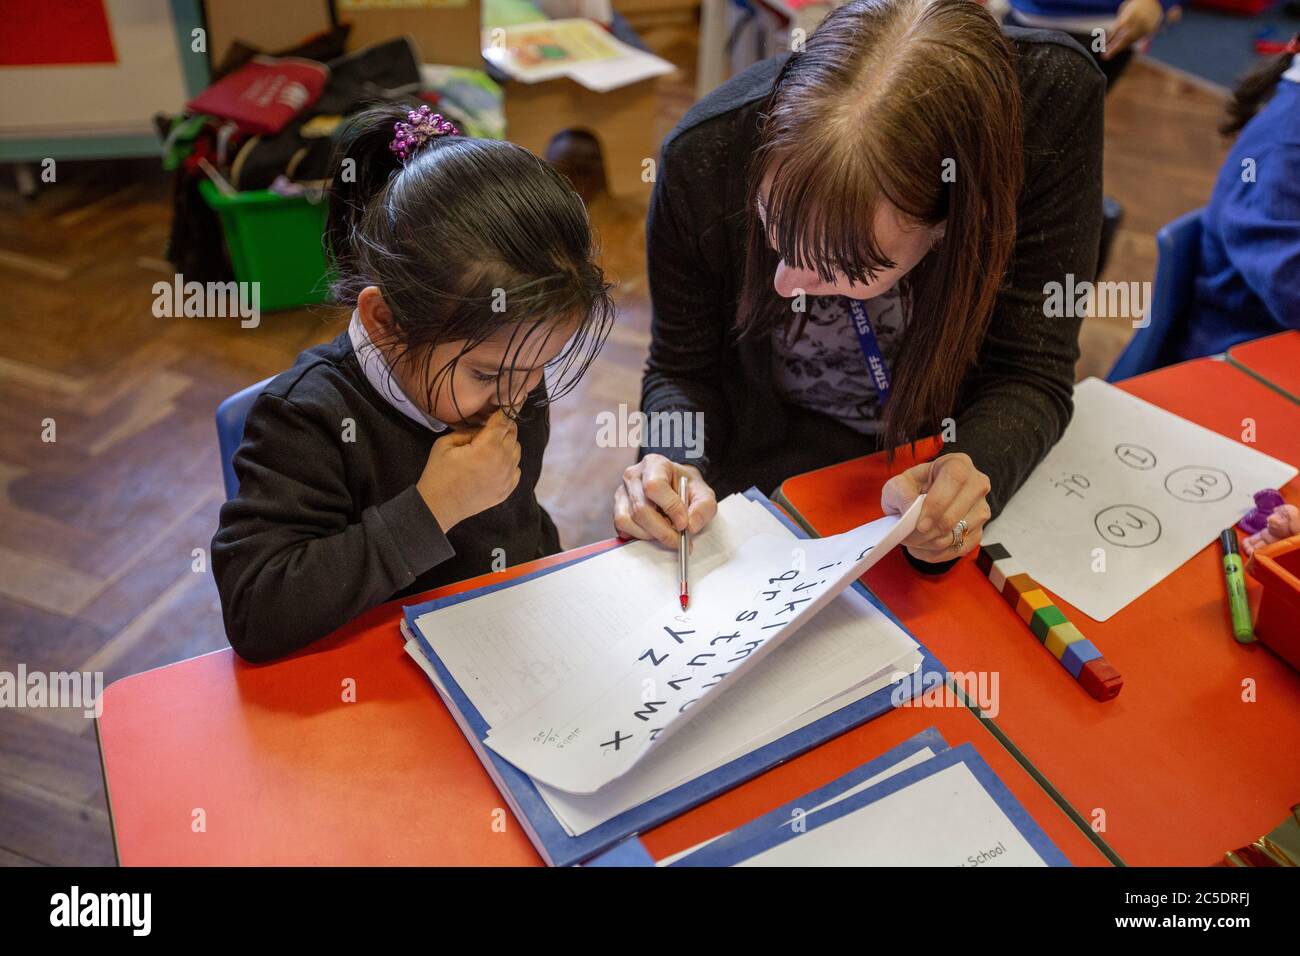 Un enseignant aide une écolière pendant une classe d'anglais au Royaume-Uni Banque D'Images